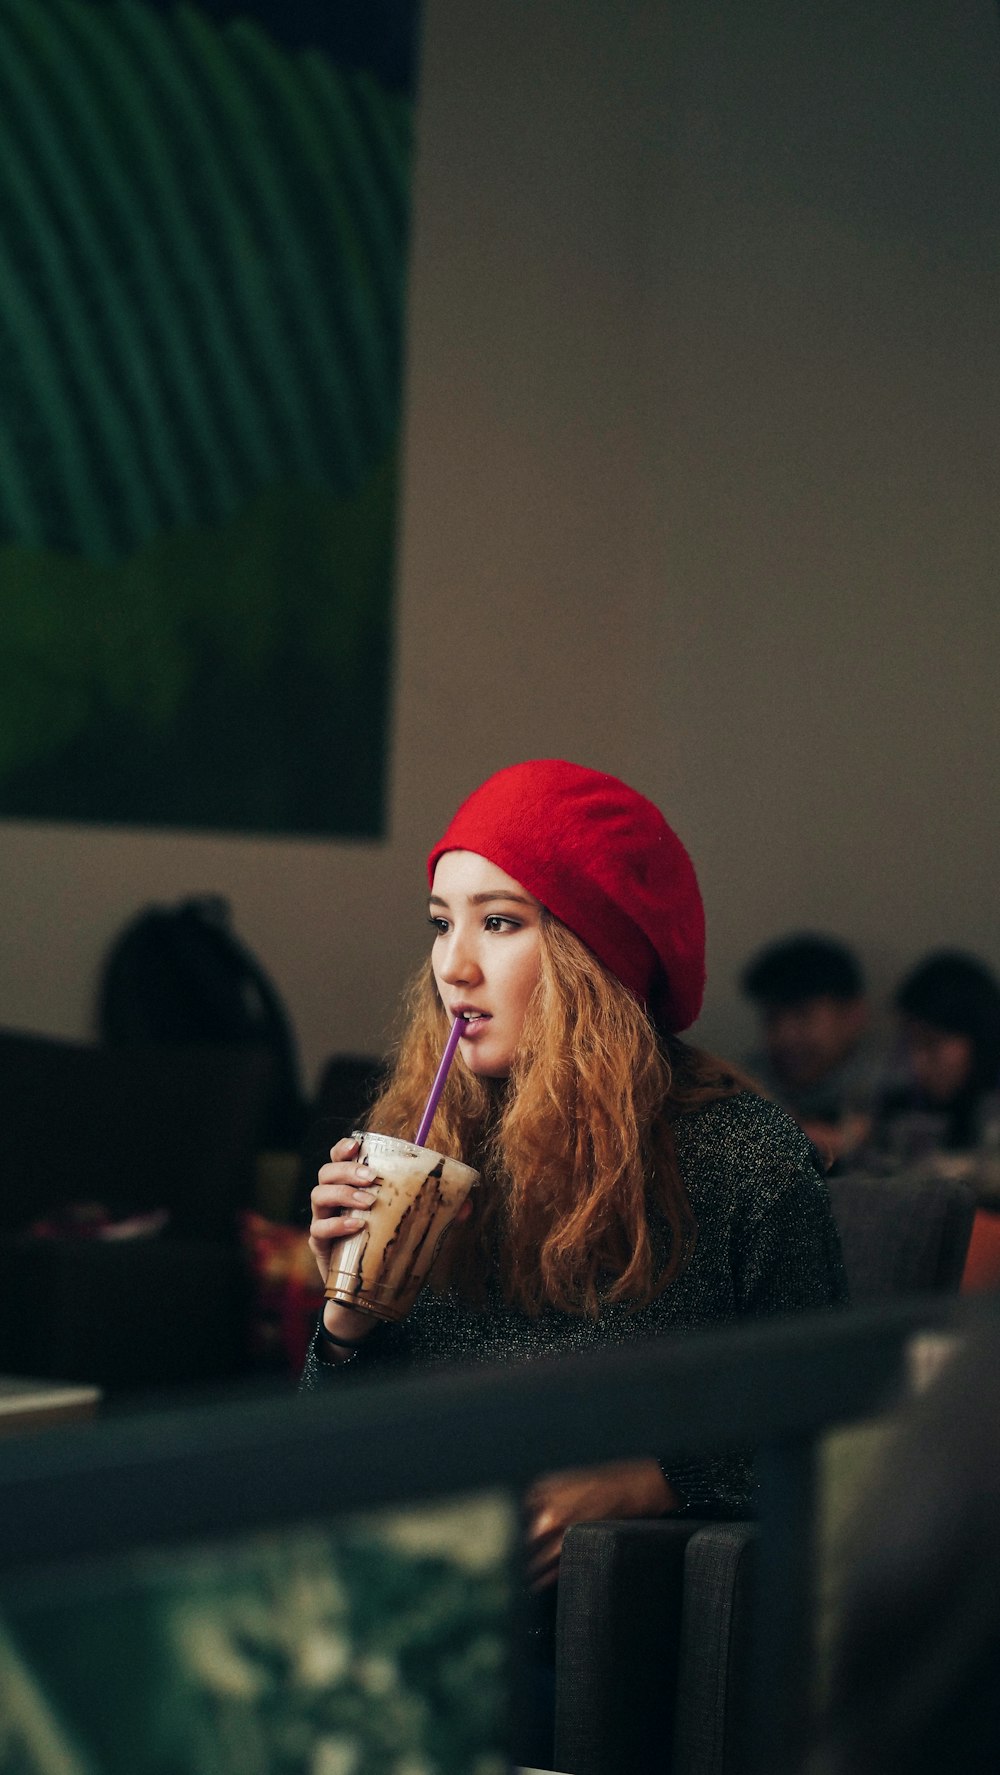 검은 재킷과 빨간 니트 모자를 쓰고 일회용 솔로 컵에 음료를 들고 있는 여자